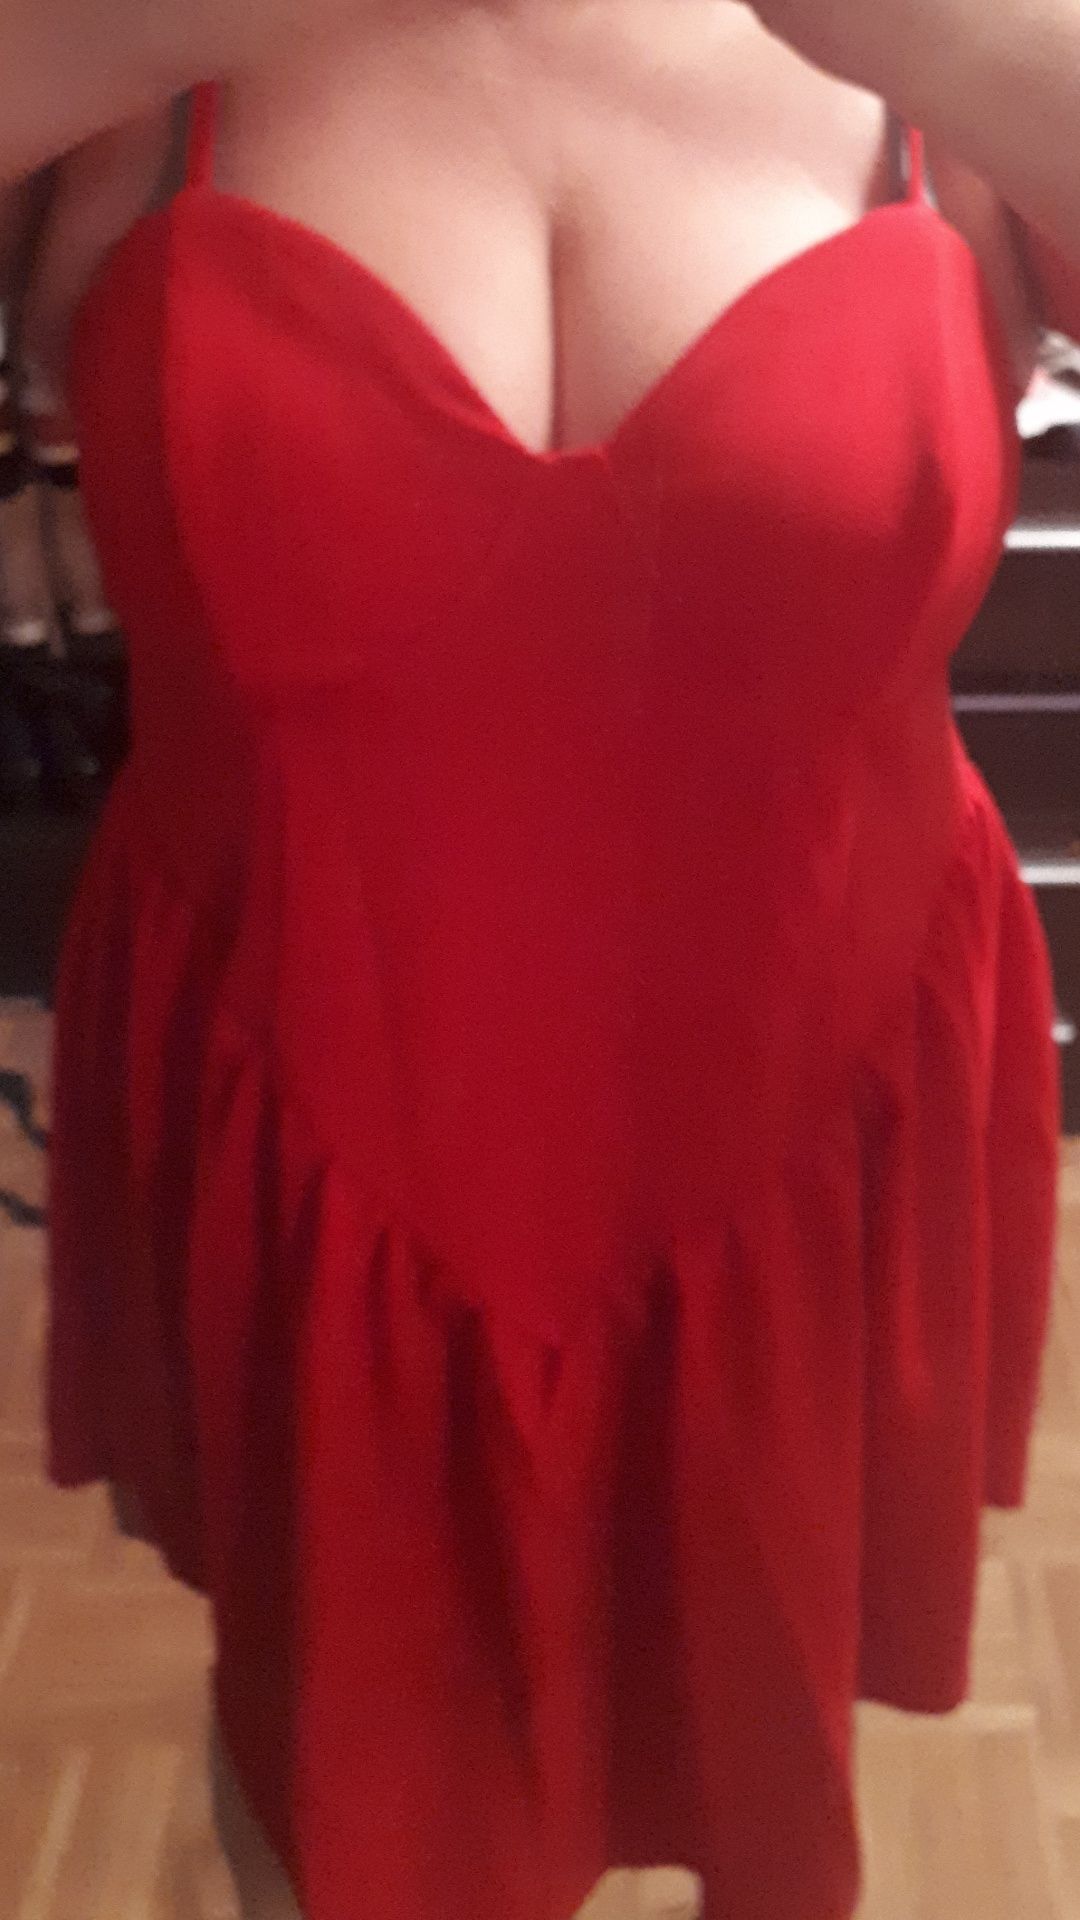 Piękna sukienka czerwona święta sylwester plus size